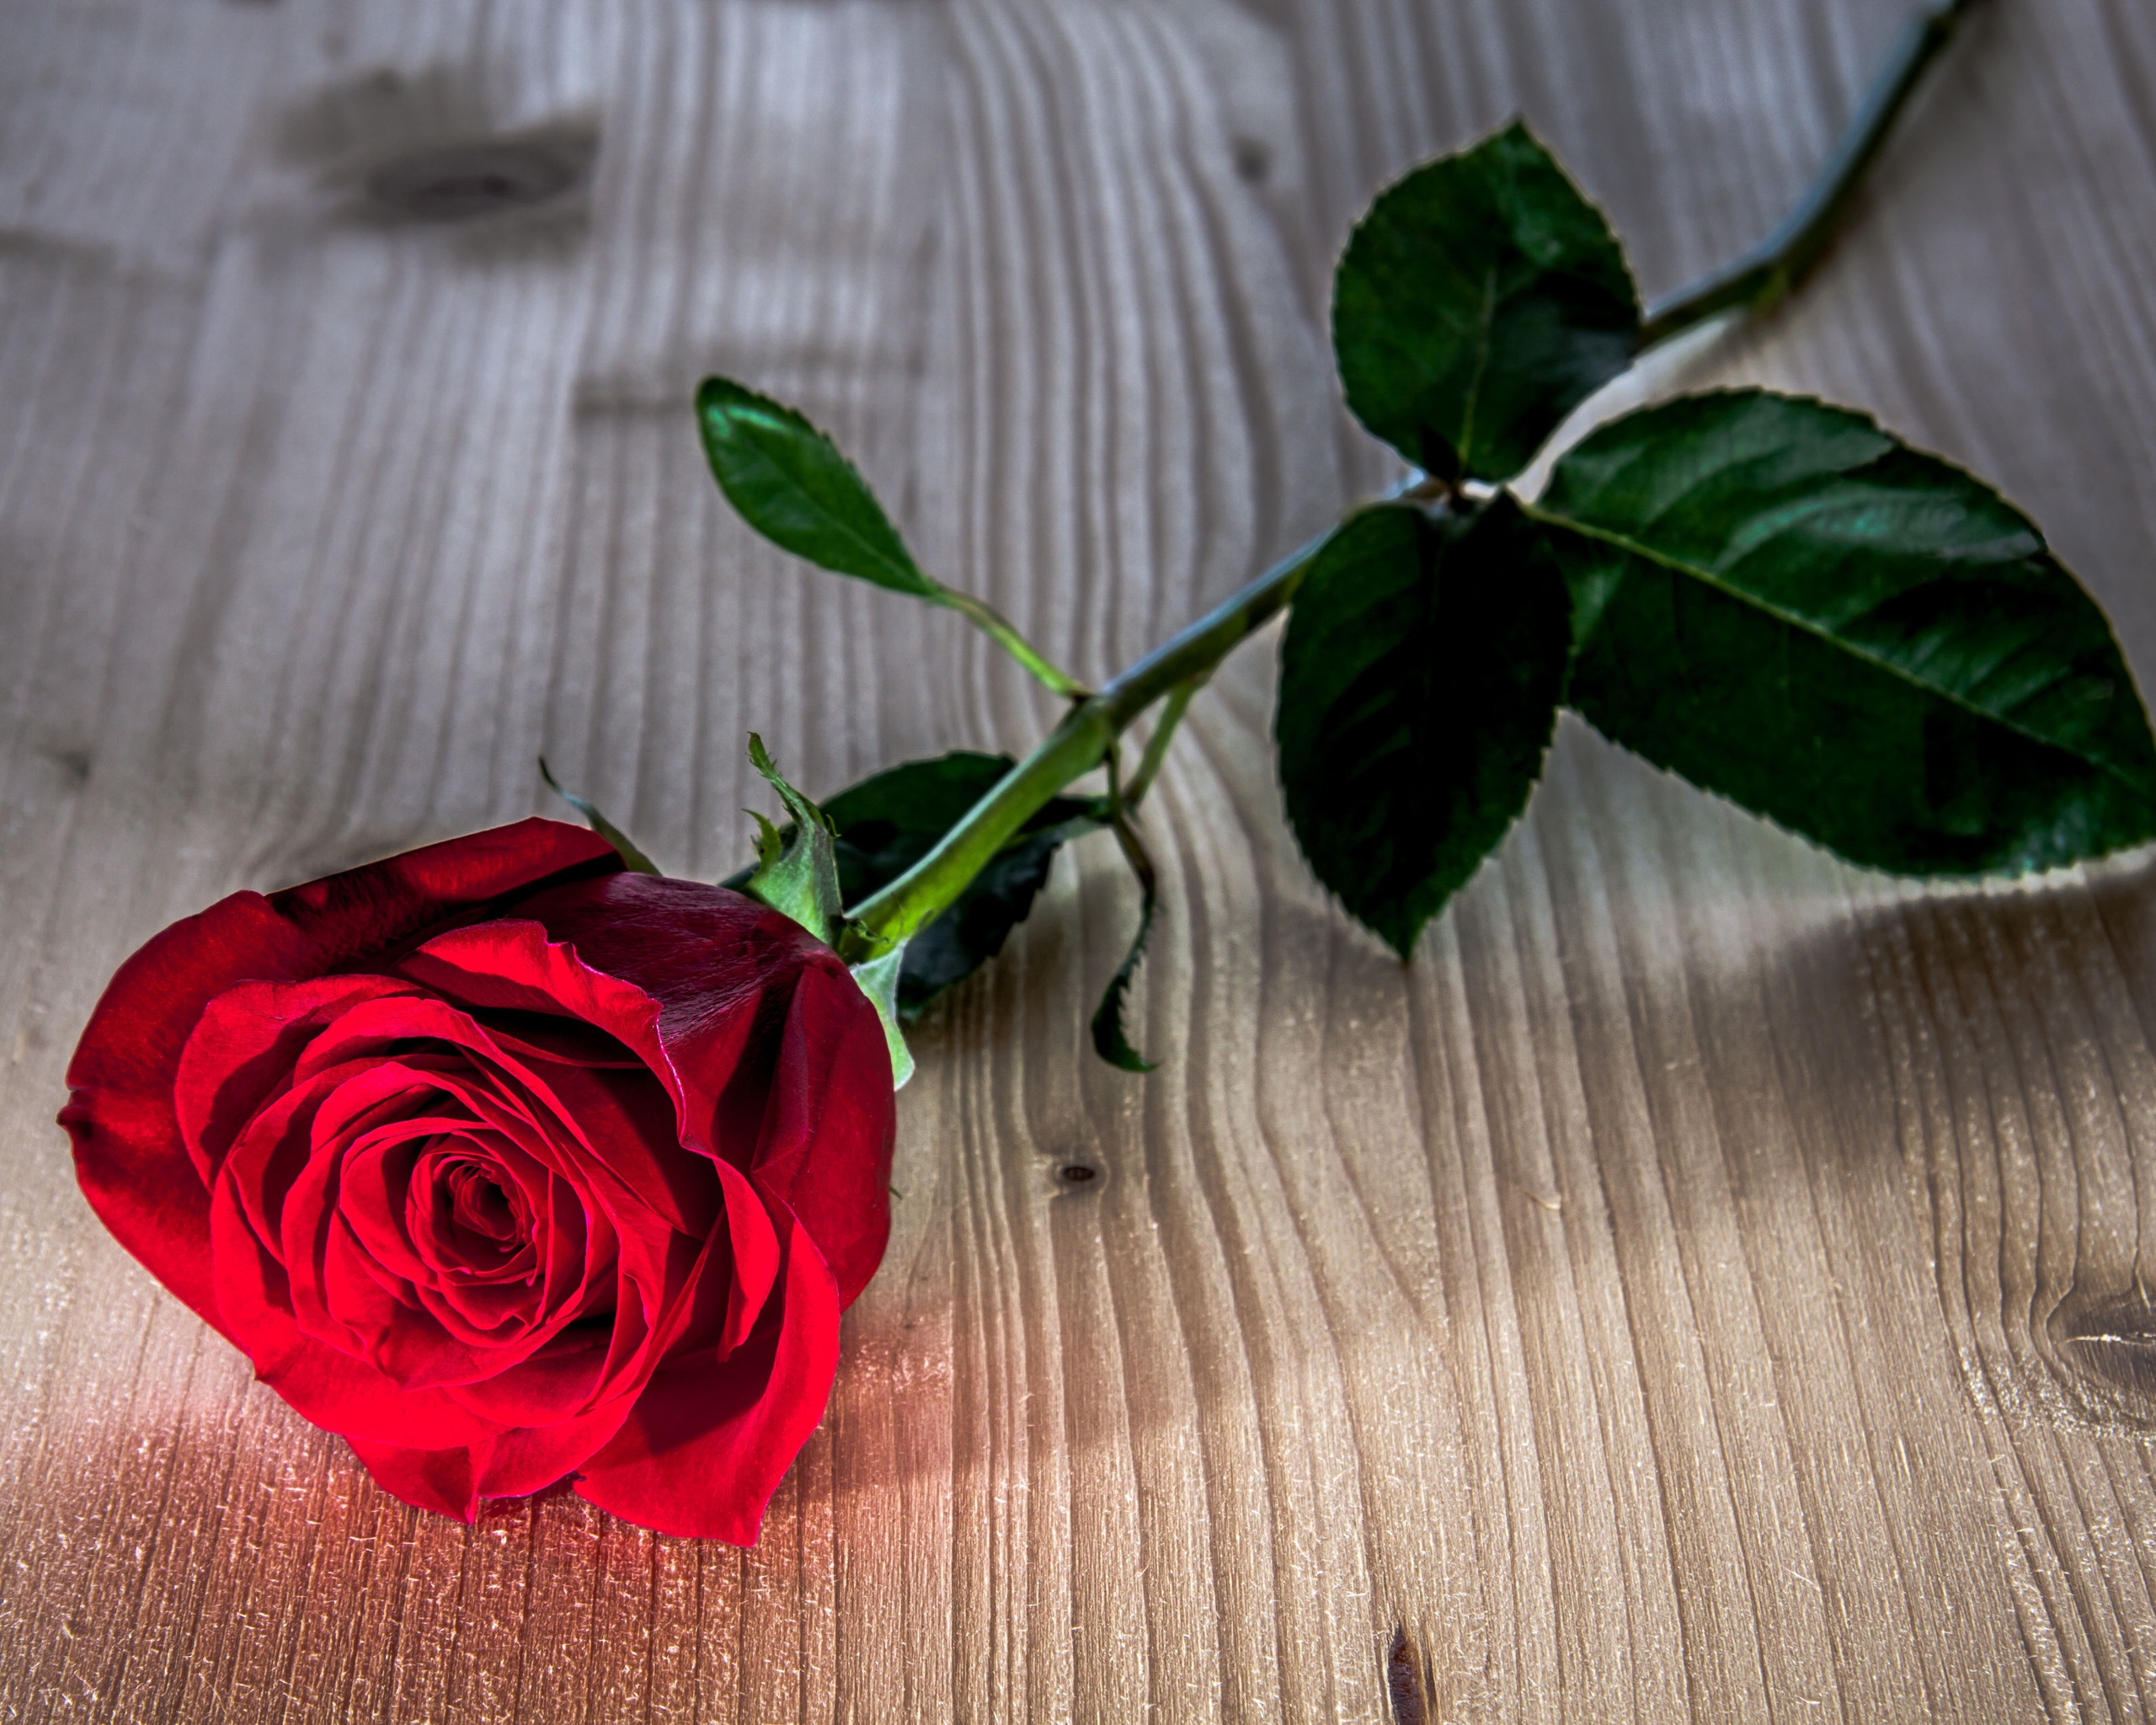 Image: Rose, red, flower, leaves, lying